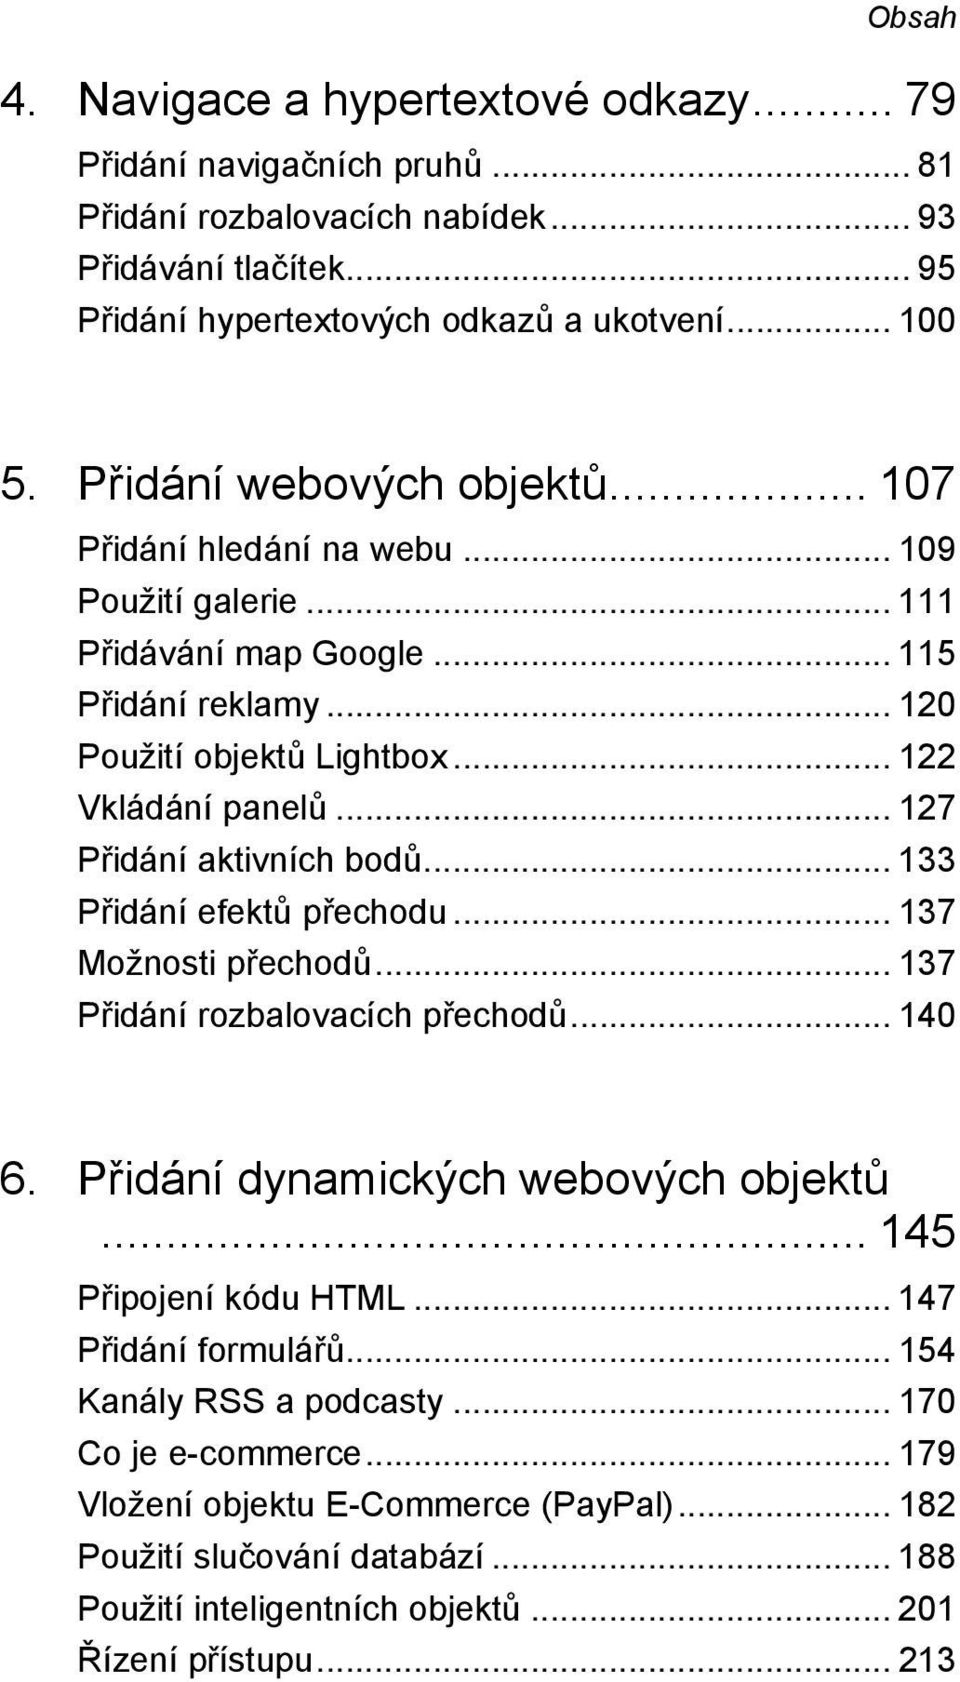 .. 127 Přidání aktivních bodů... 133 Přidání efektů přechodu... 137 Možnosti přechodů... 137 Přidání rozbalovacích přechodů... 140 6. Přidání dynamických webových objektů... 145 Připojení kódu HTML.